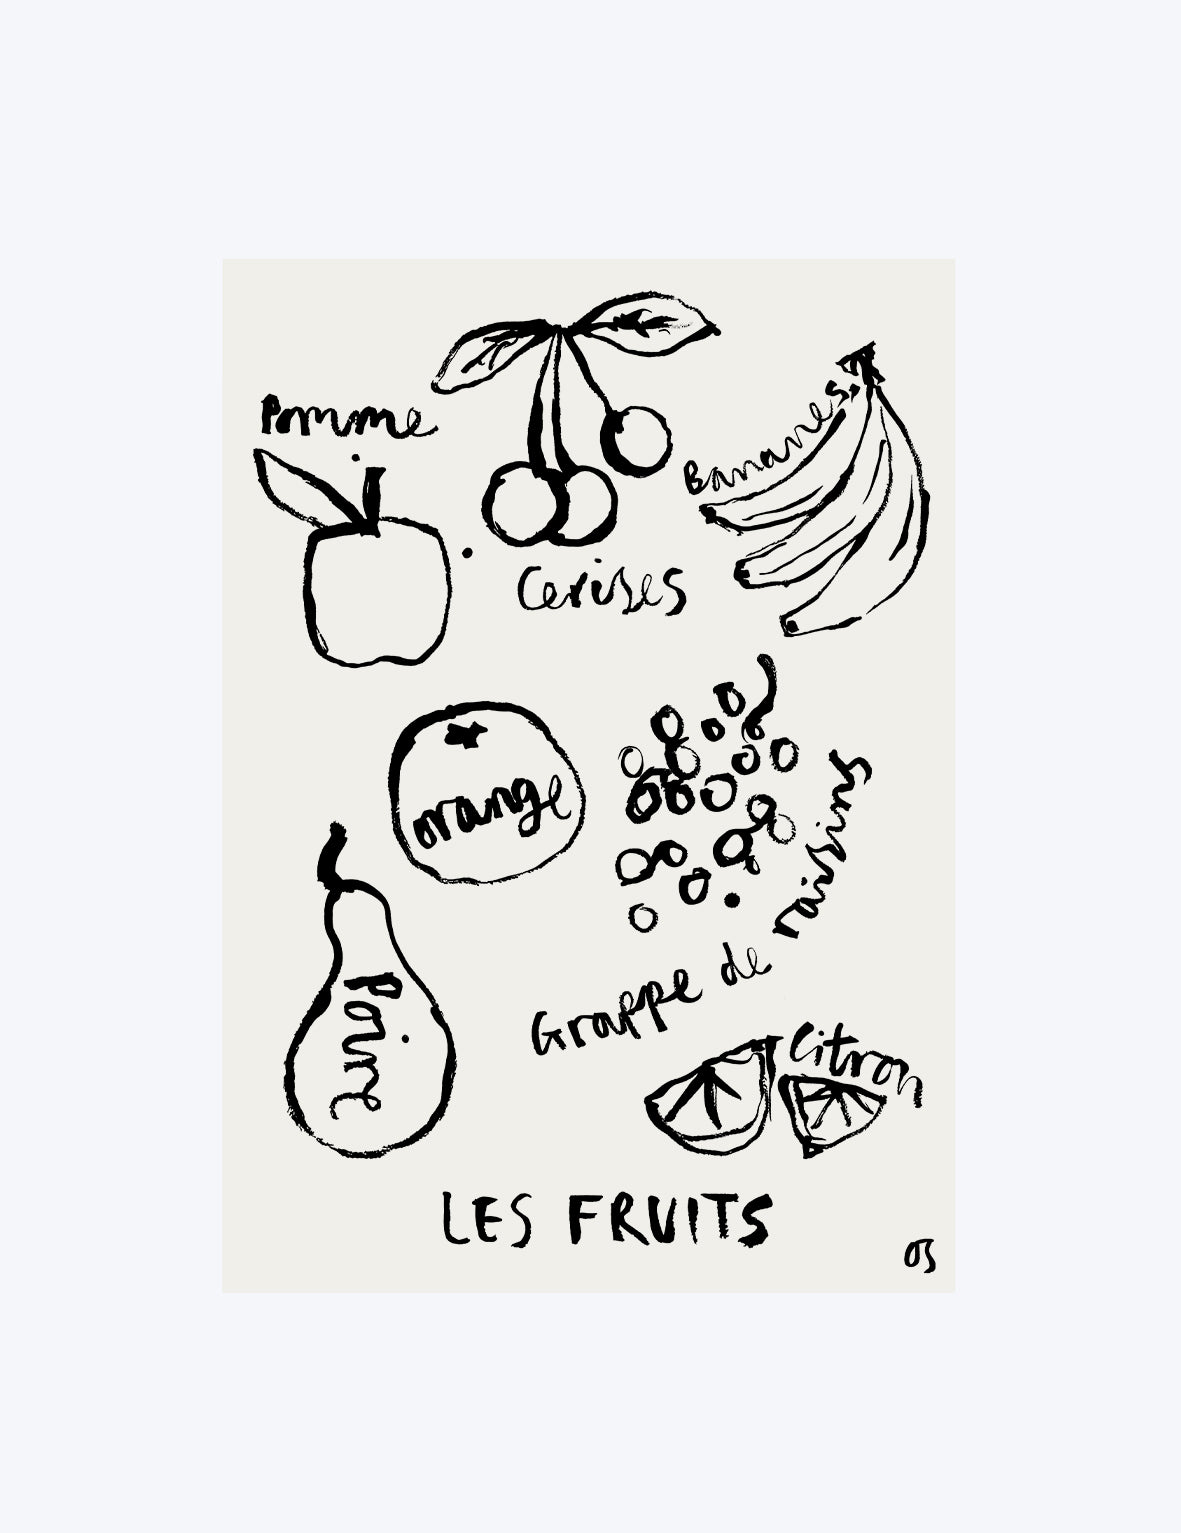 Les Fruits